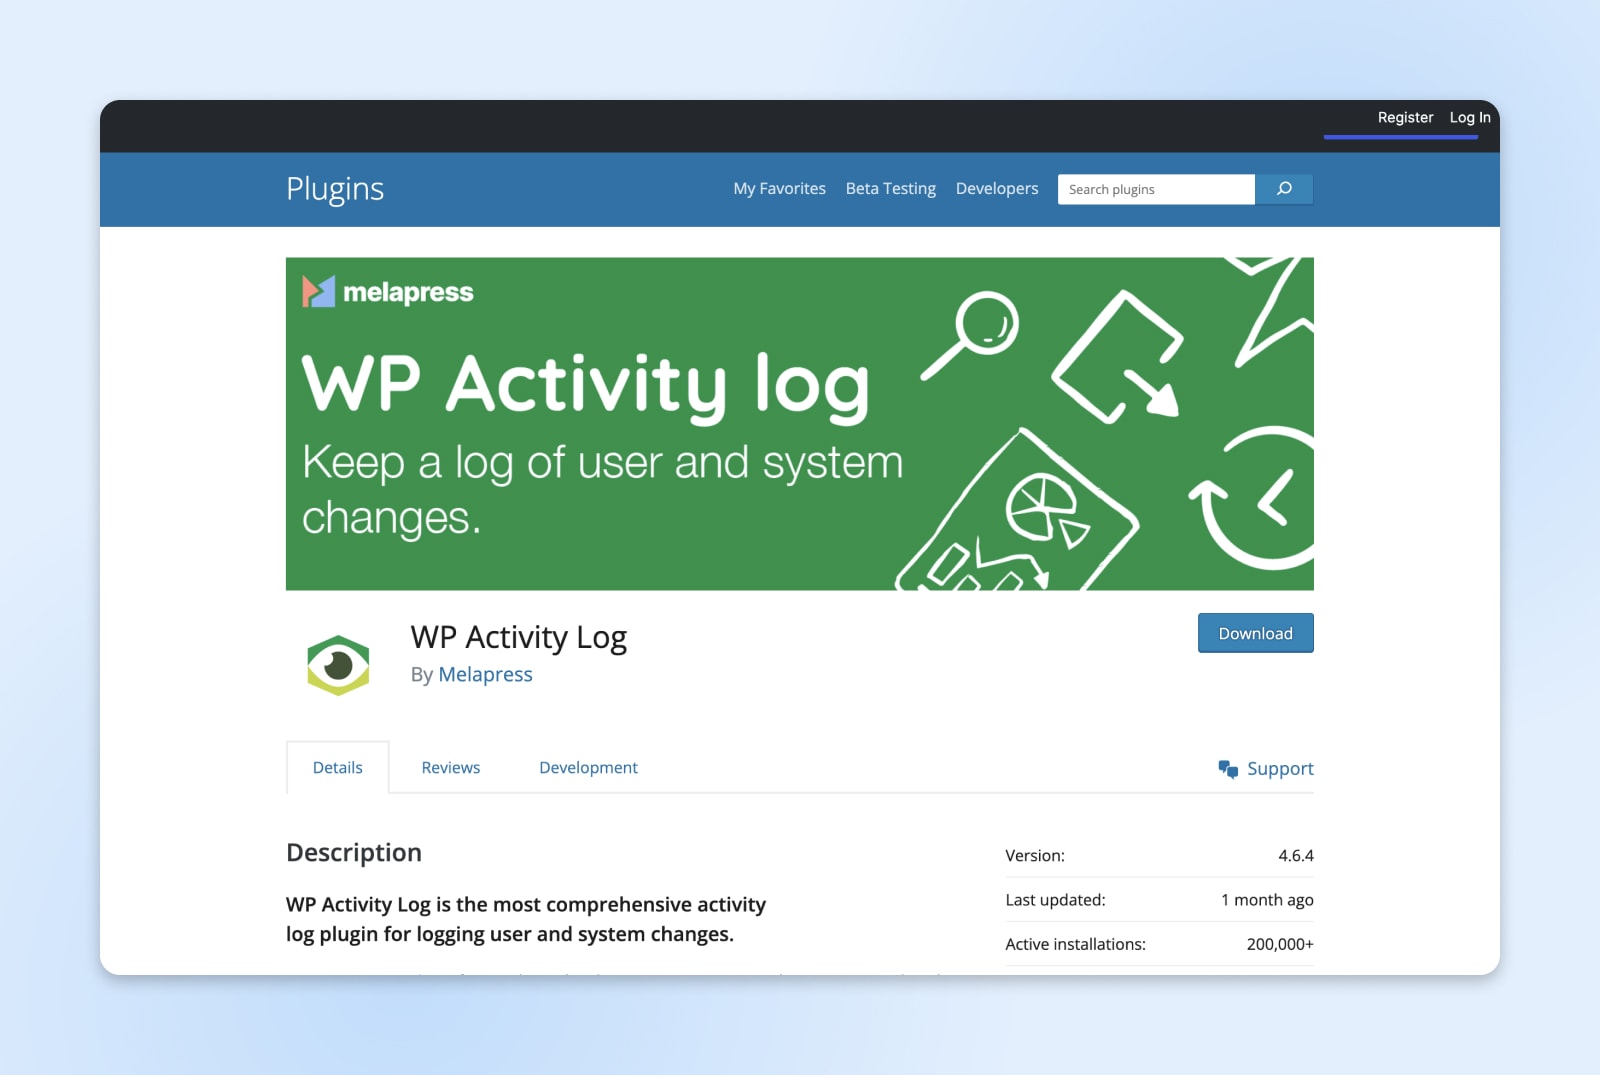 La pantalla del complemento de registro de actividad de WP muestra un banner verde y un botón de descarga azul